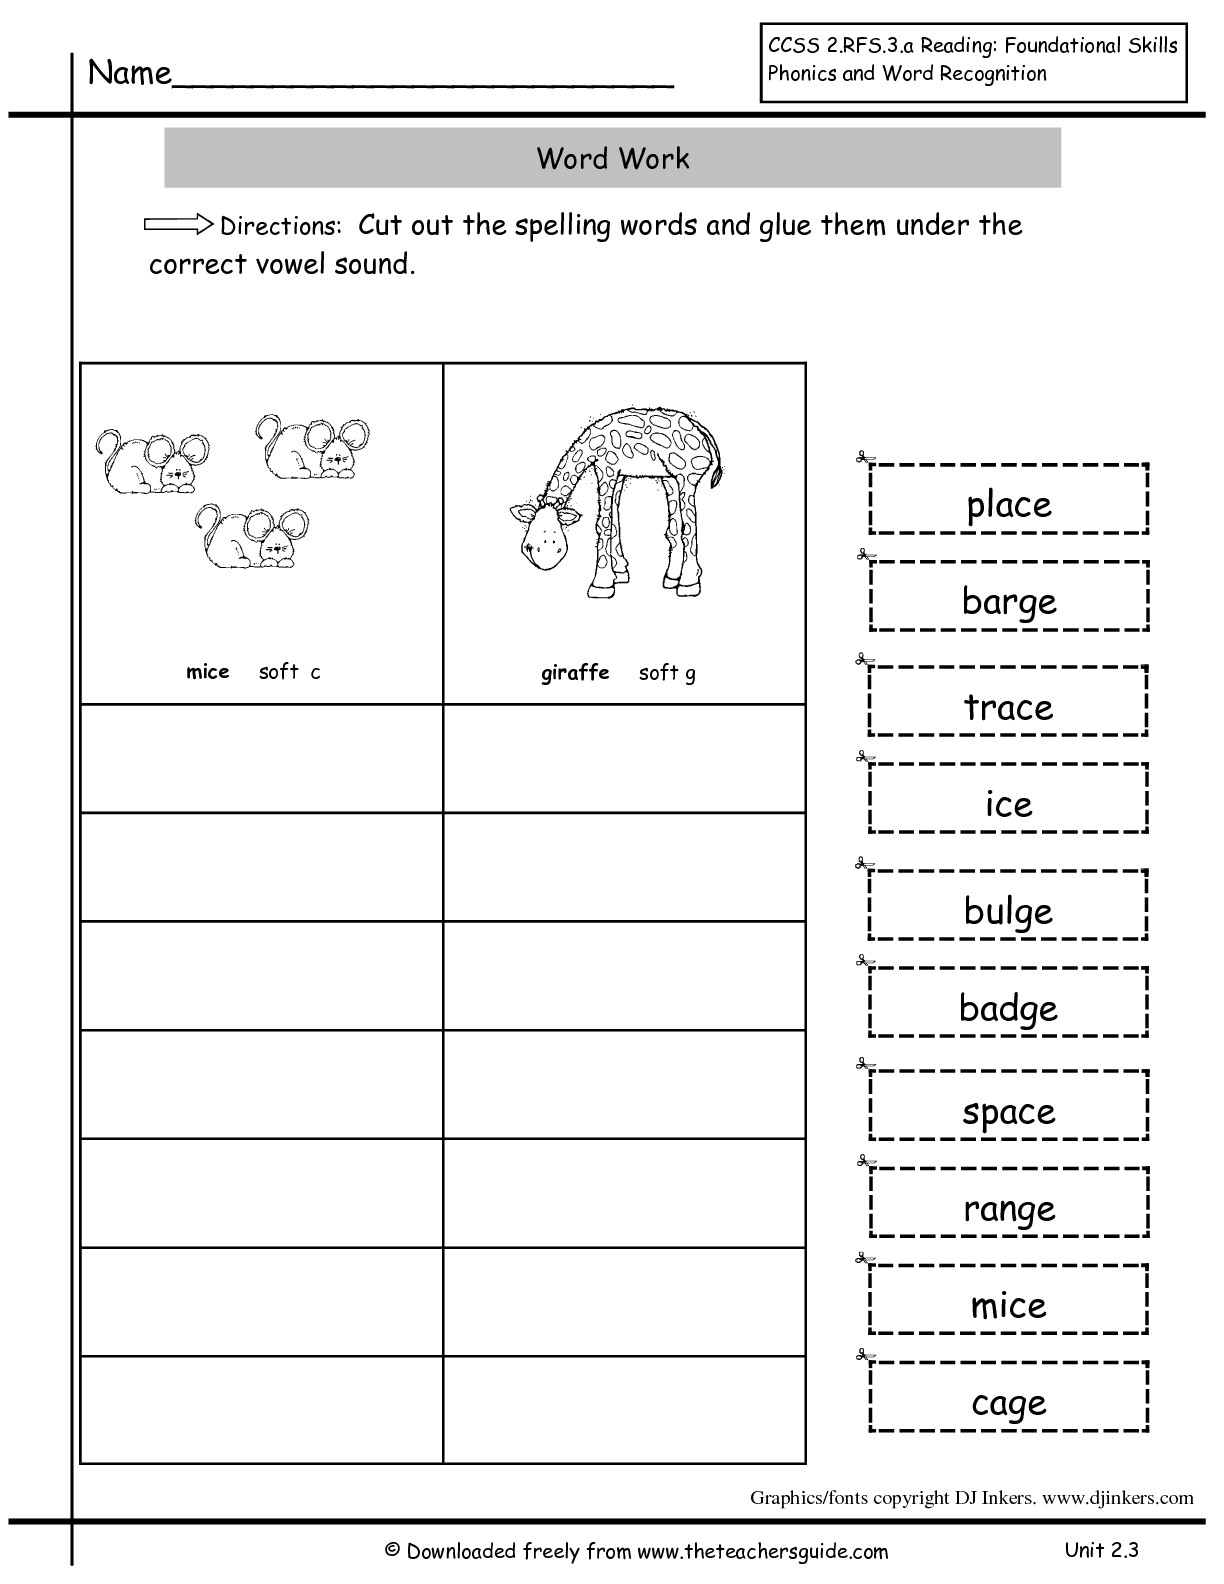 9 Best Images of Free Spelling Worksheet Maker - 2nd Grade ...